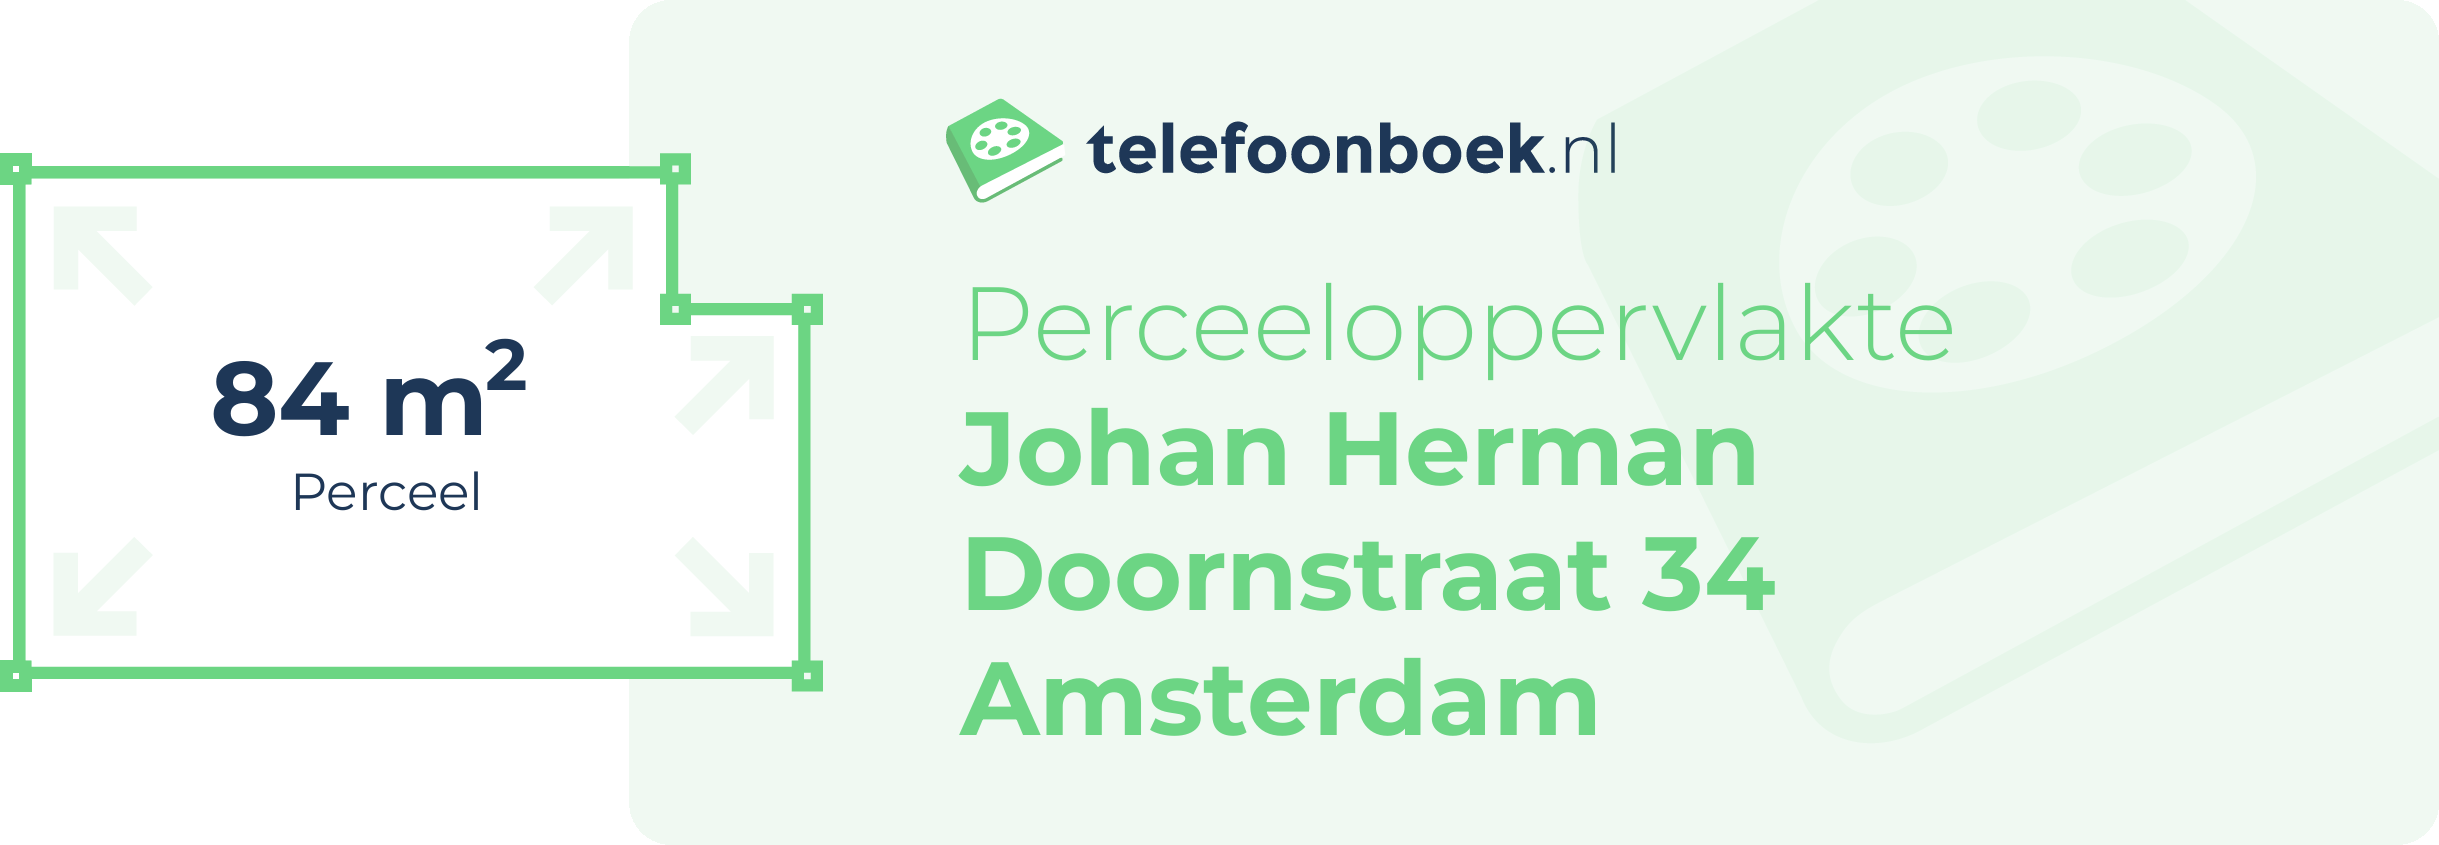 Perceeloppervlakte Johan Herman Doornstraat 34 Amsterdam